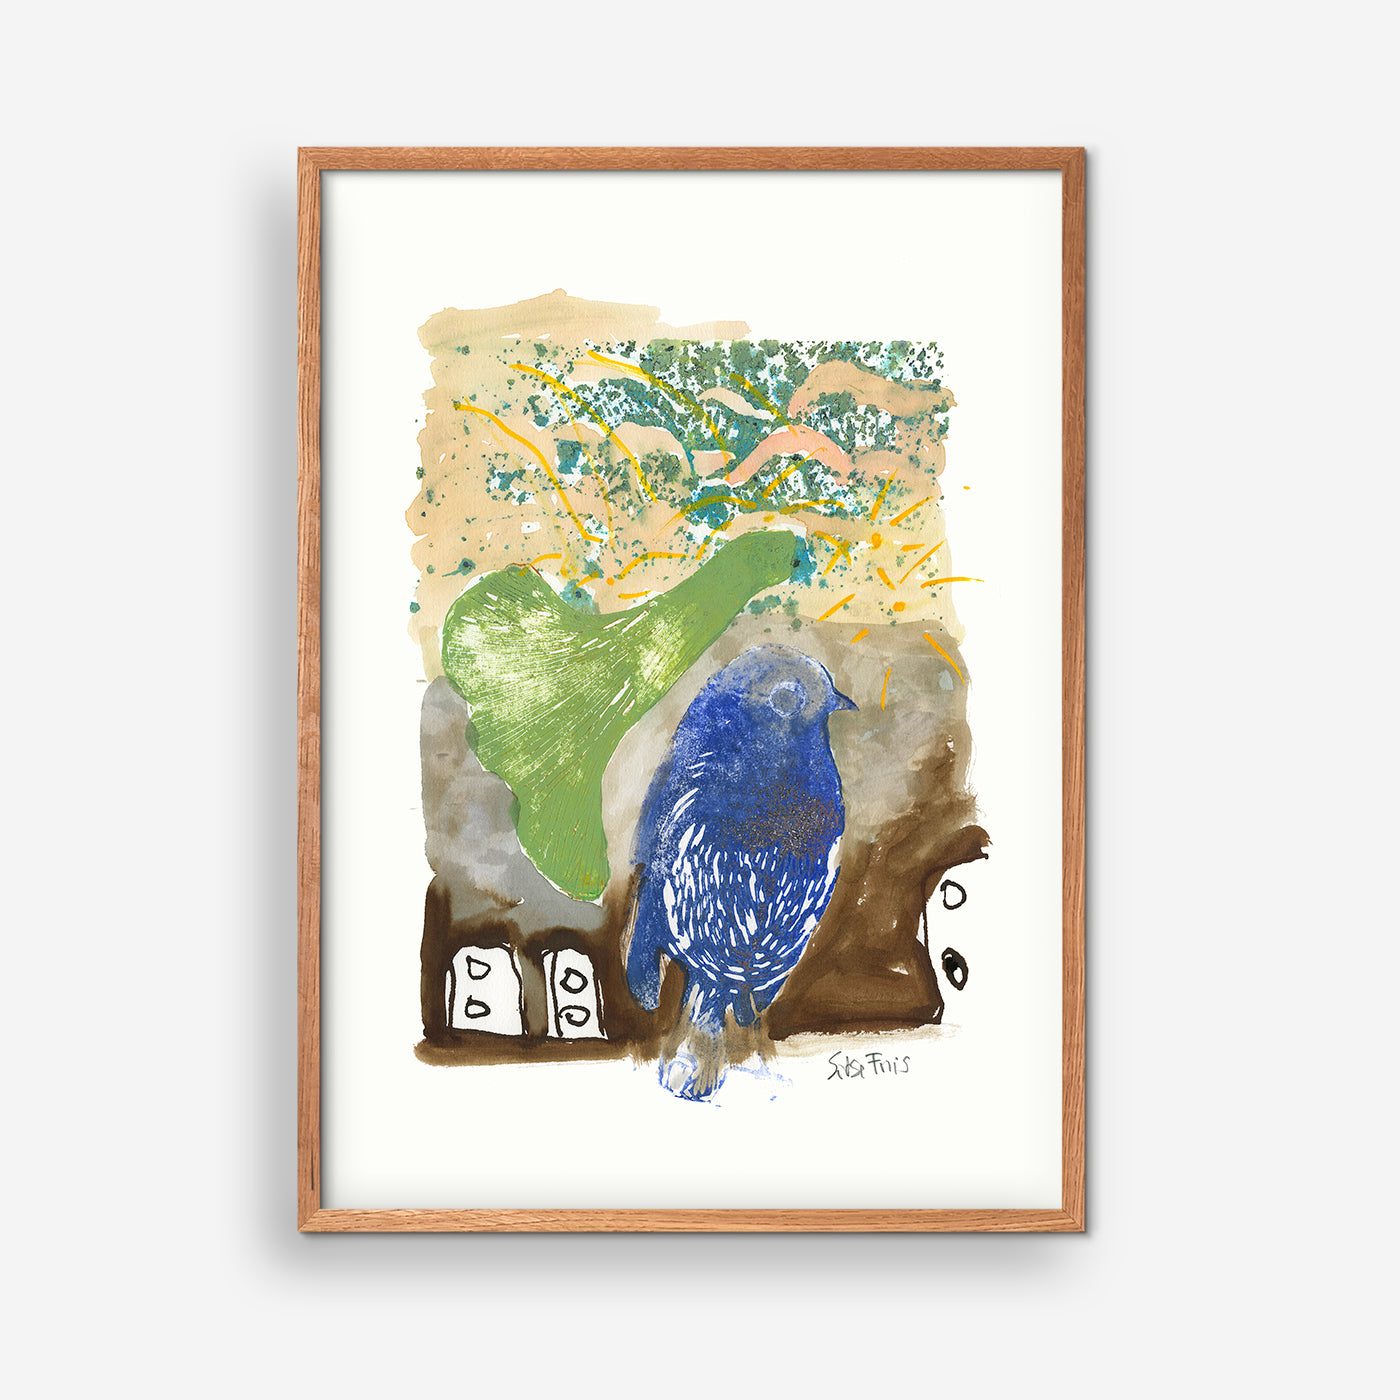 Blauer Vogel in der blauen Welt – Sidse Friis